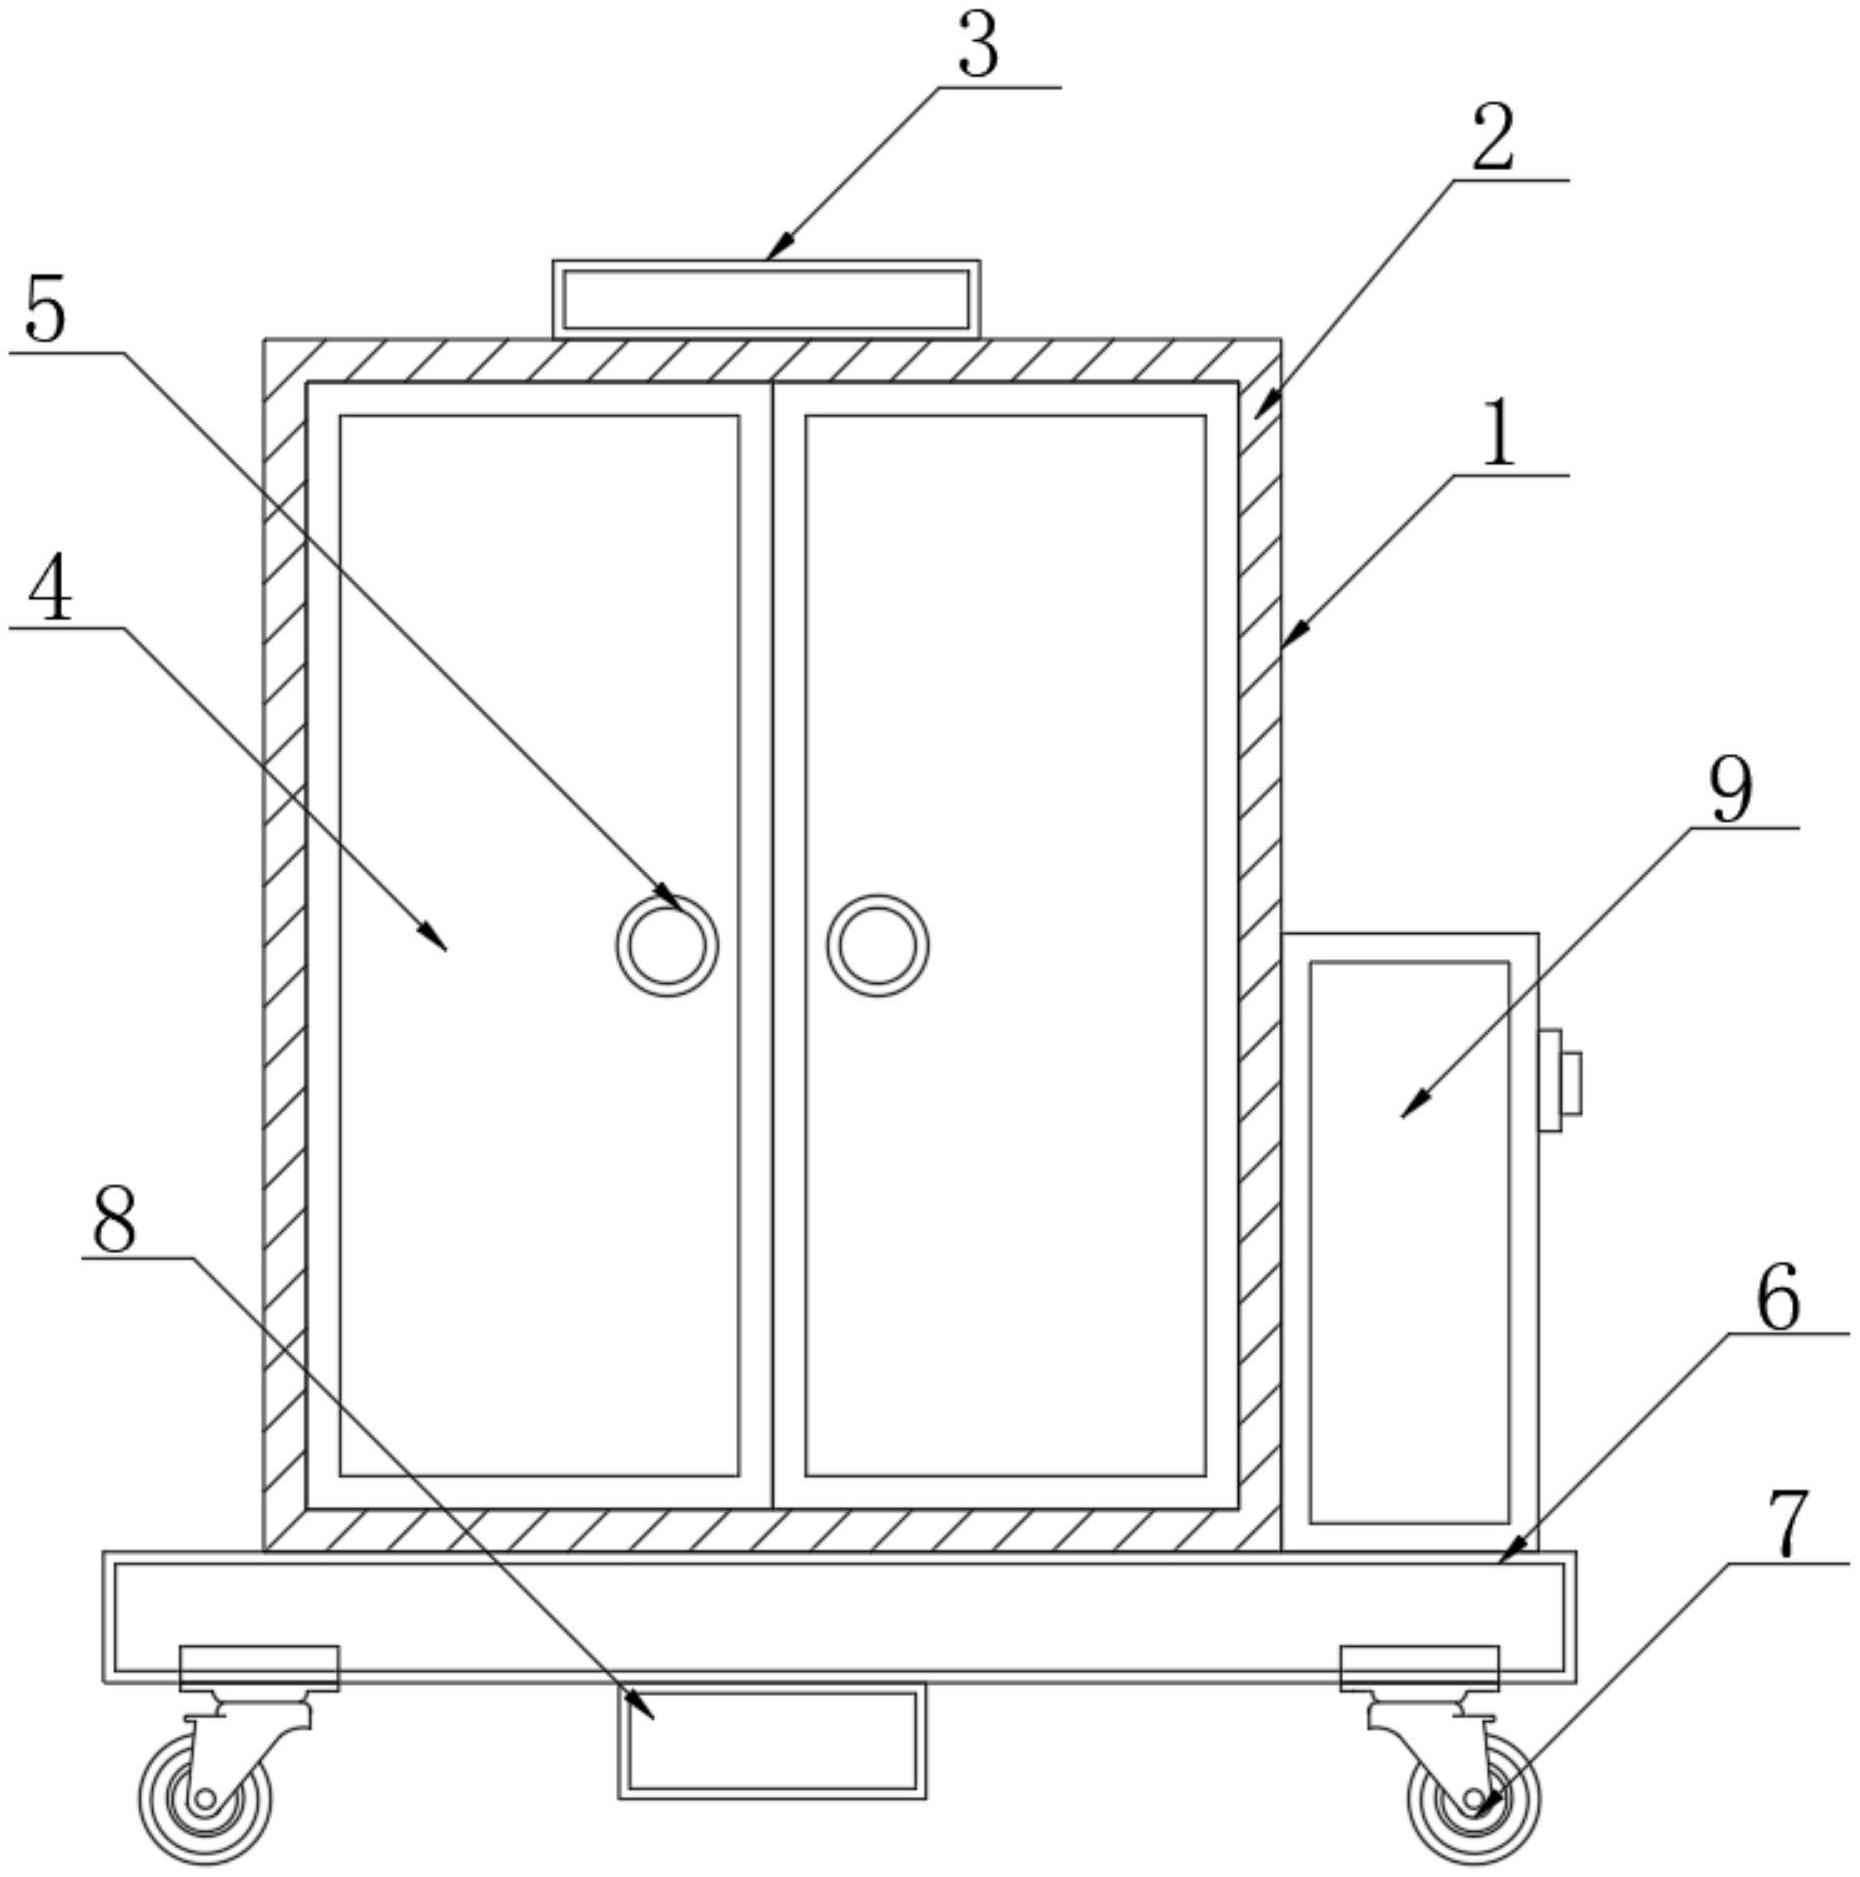 一种配电柜生产储存机构专利图